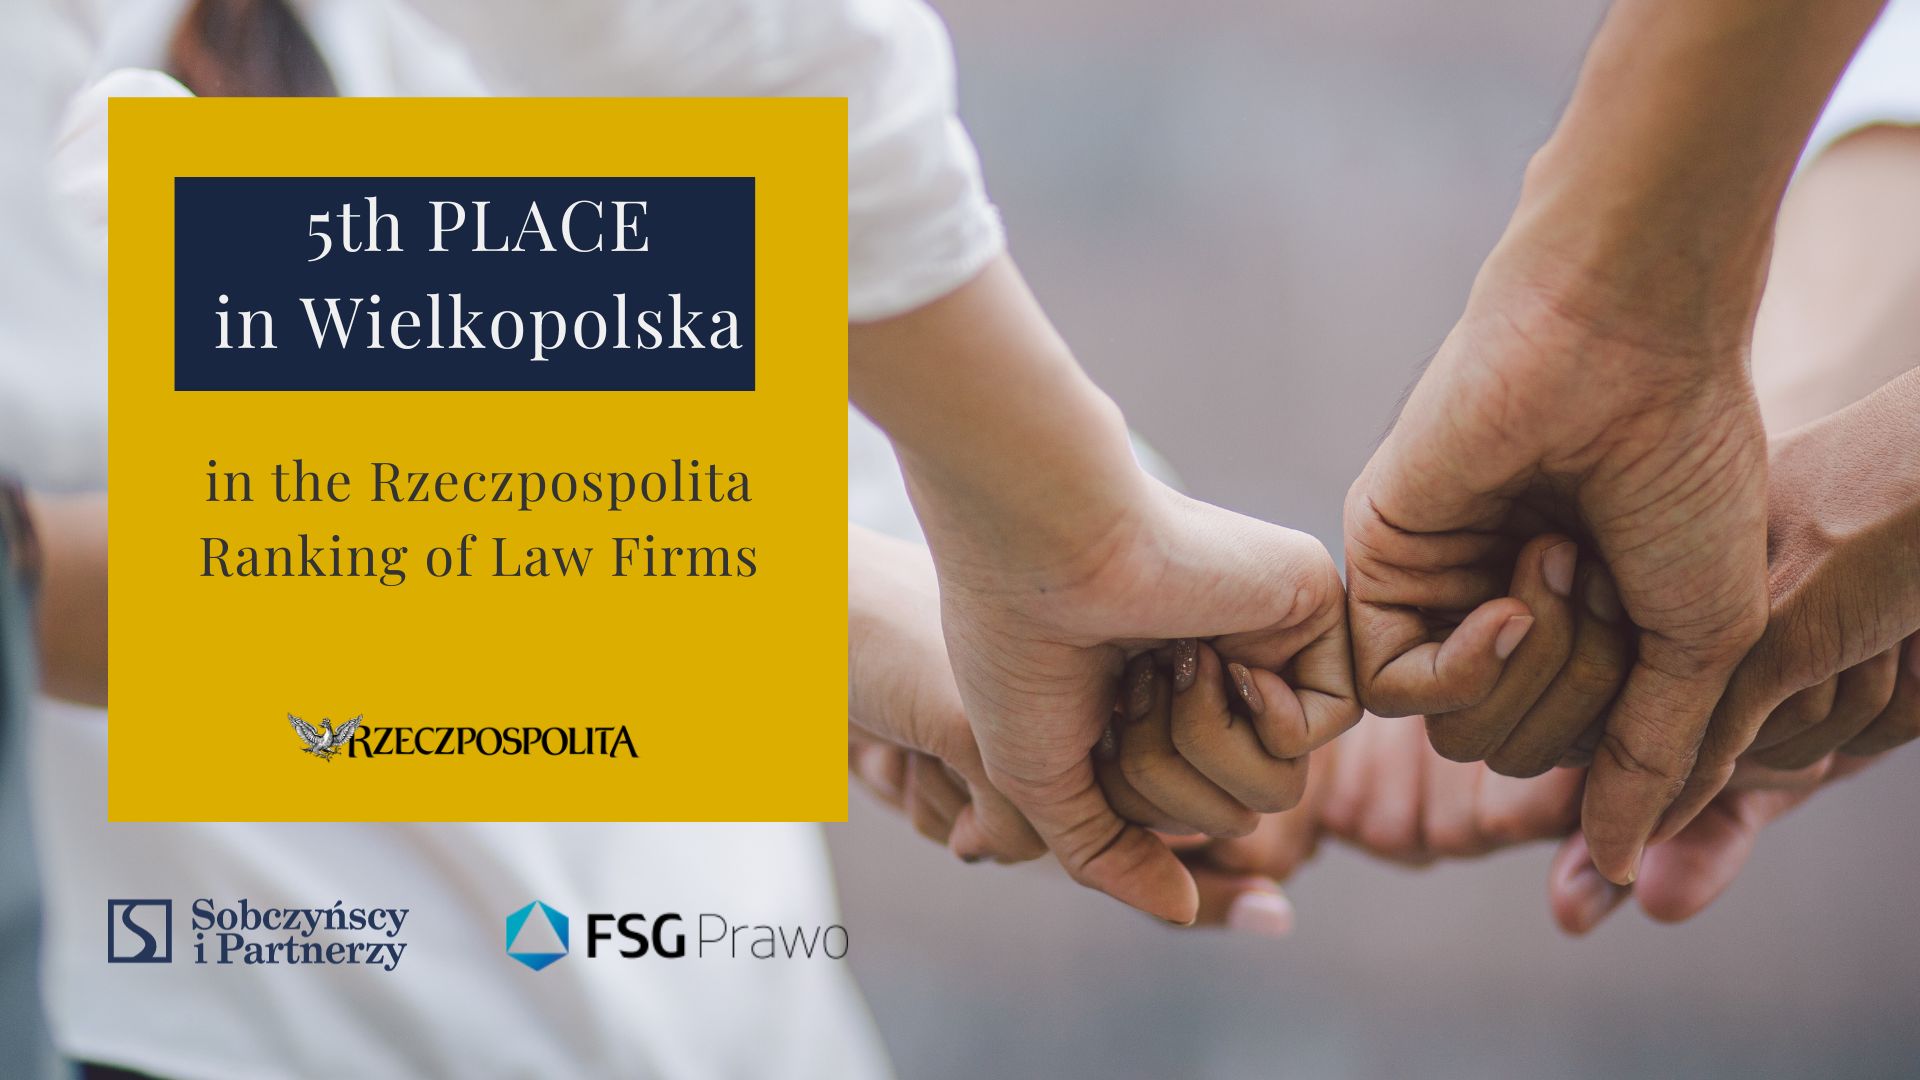 5th PLACE
in Wielkopolska

in the Rzeczpospolita Ranking of Law Firms
